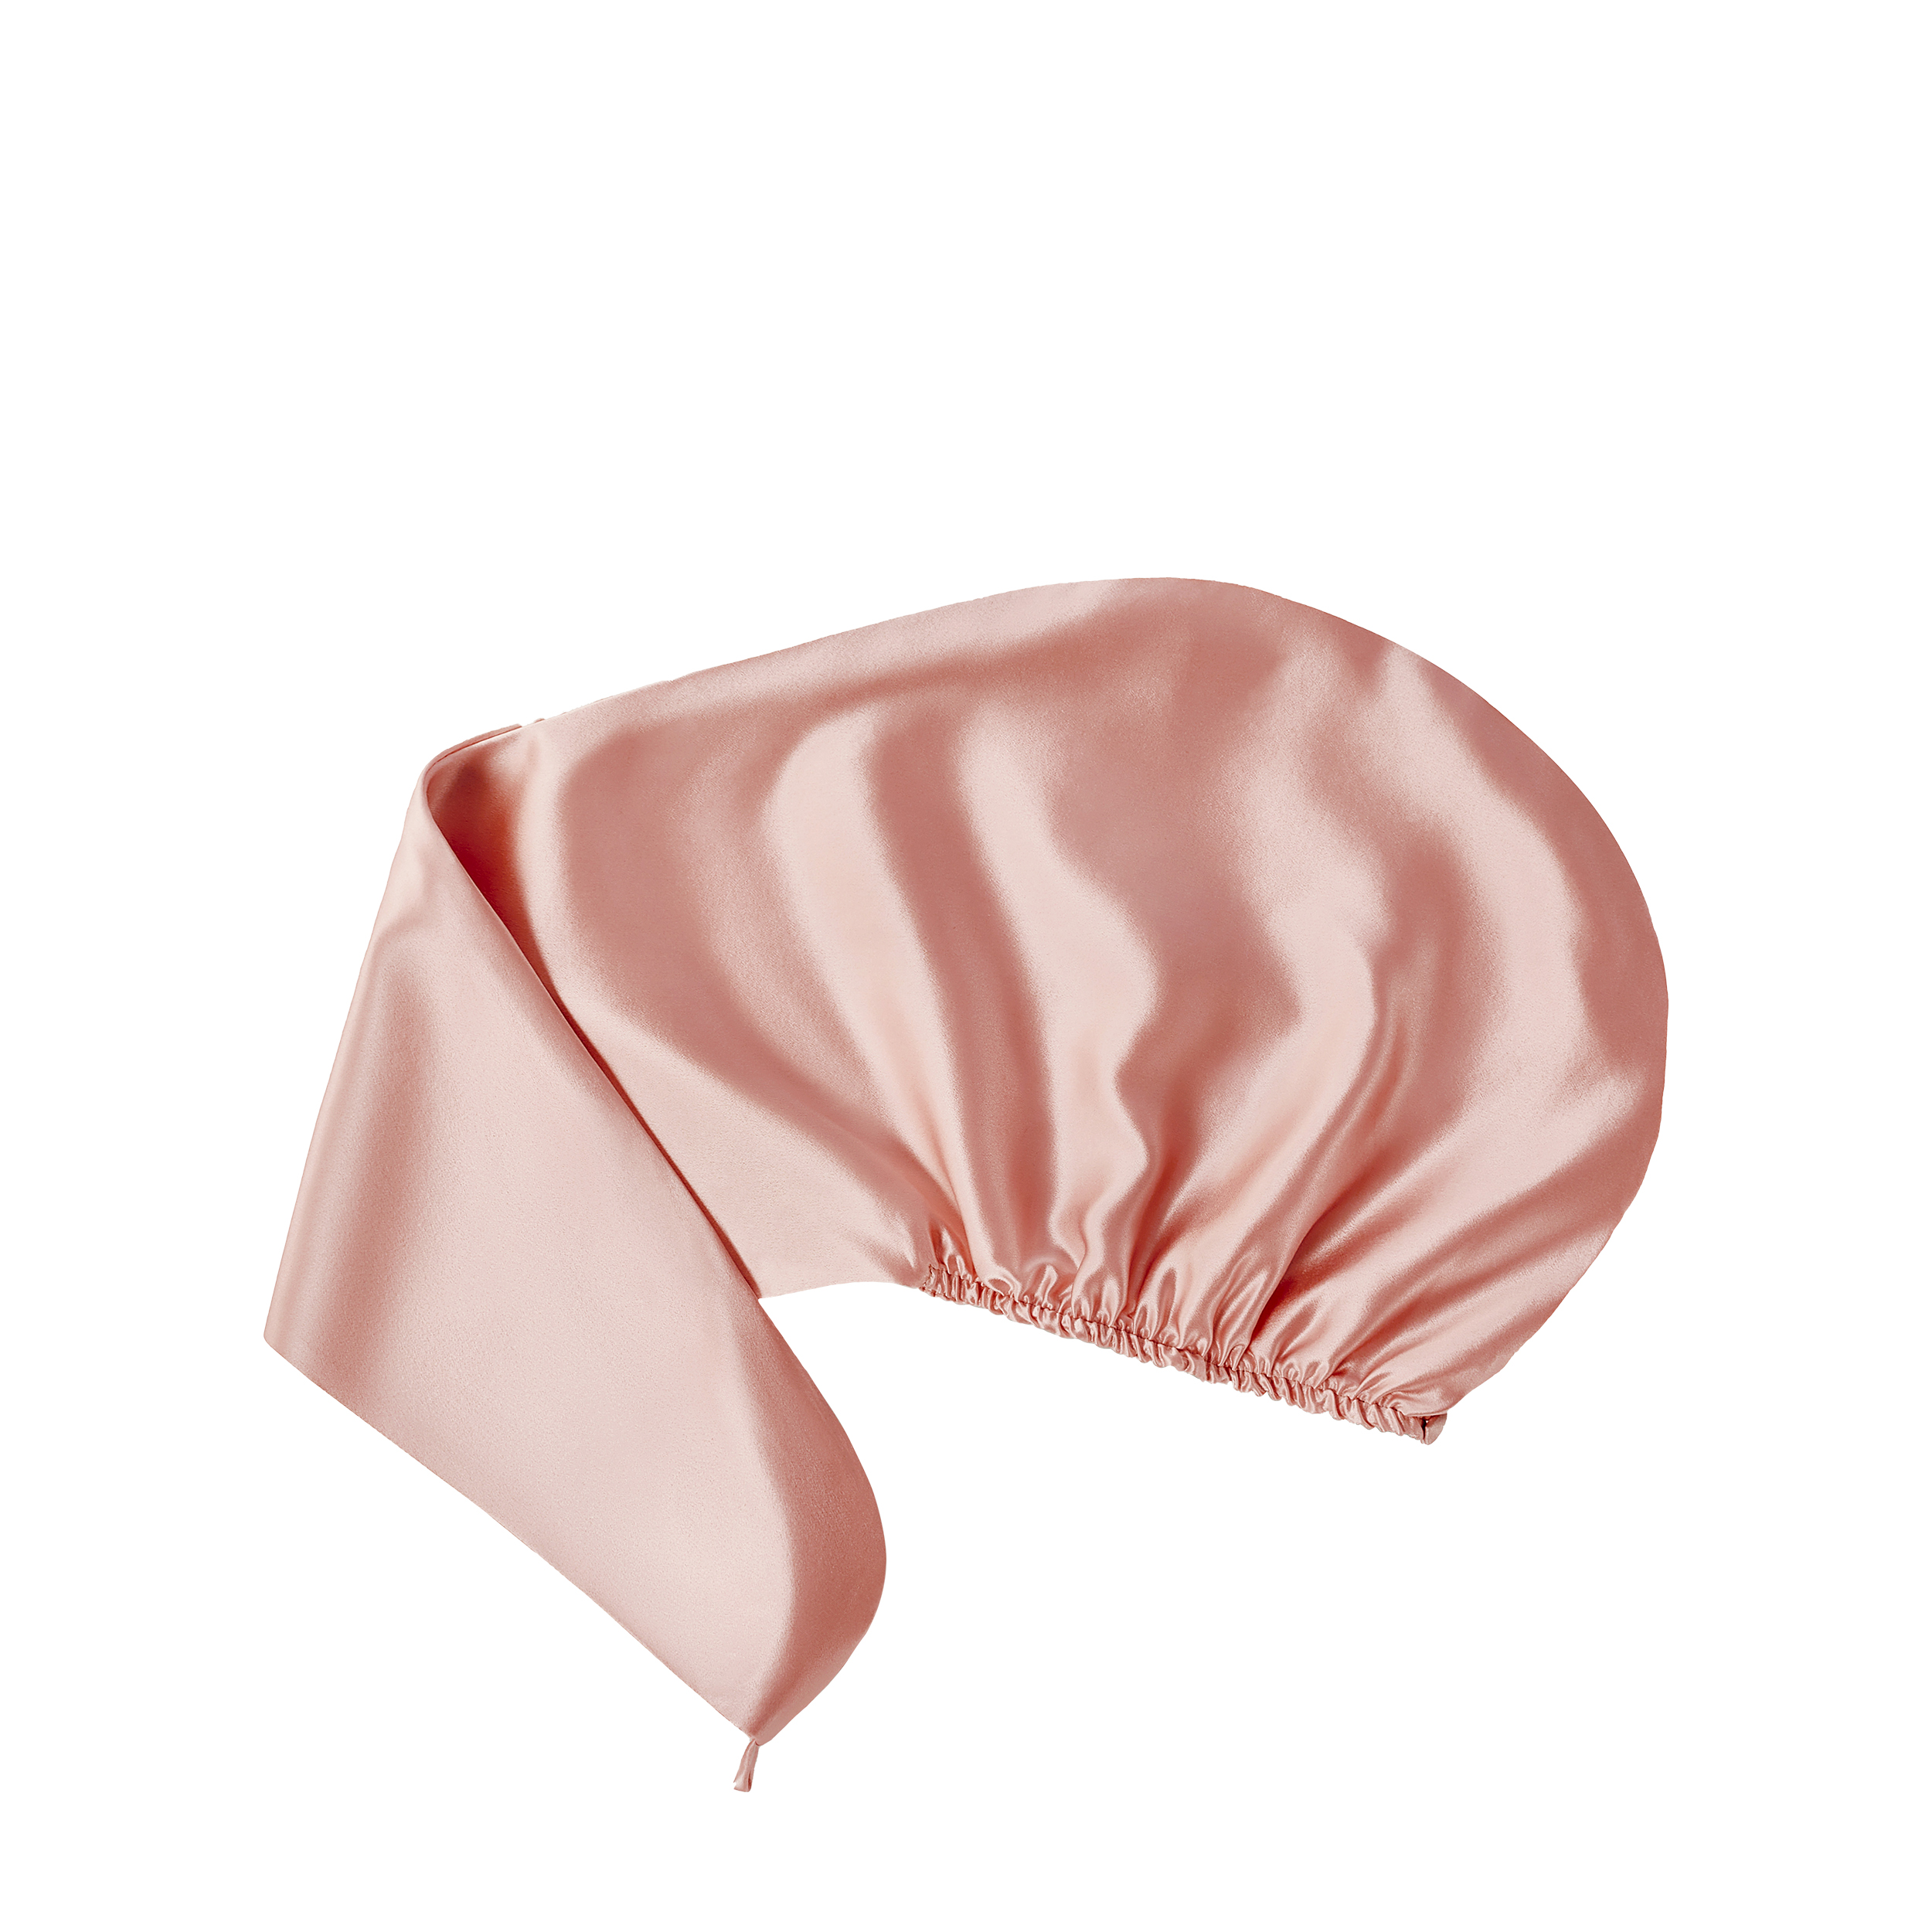 AYRIS SILK AYRIS SILK Полотенце-тюрбан Ayris Silk  из натурального шёлка, арт. 5013, цвет розовая пудра (35x75)